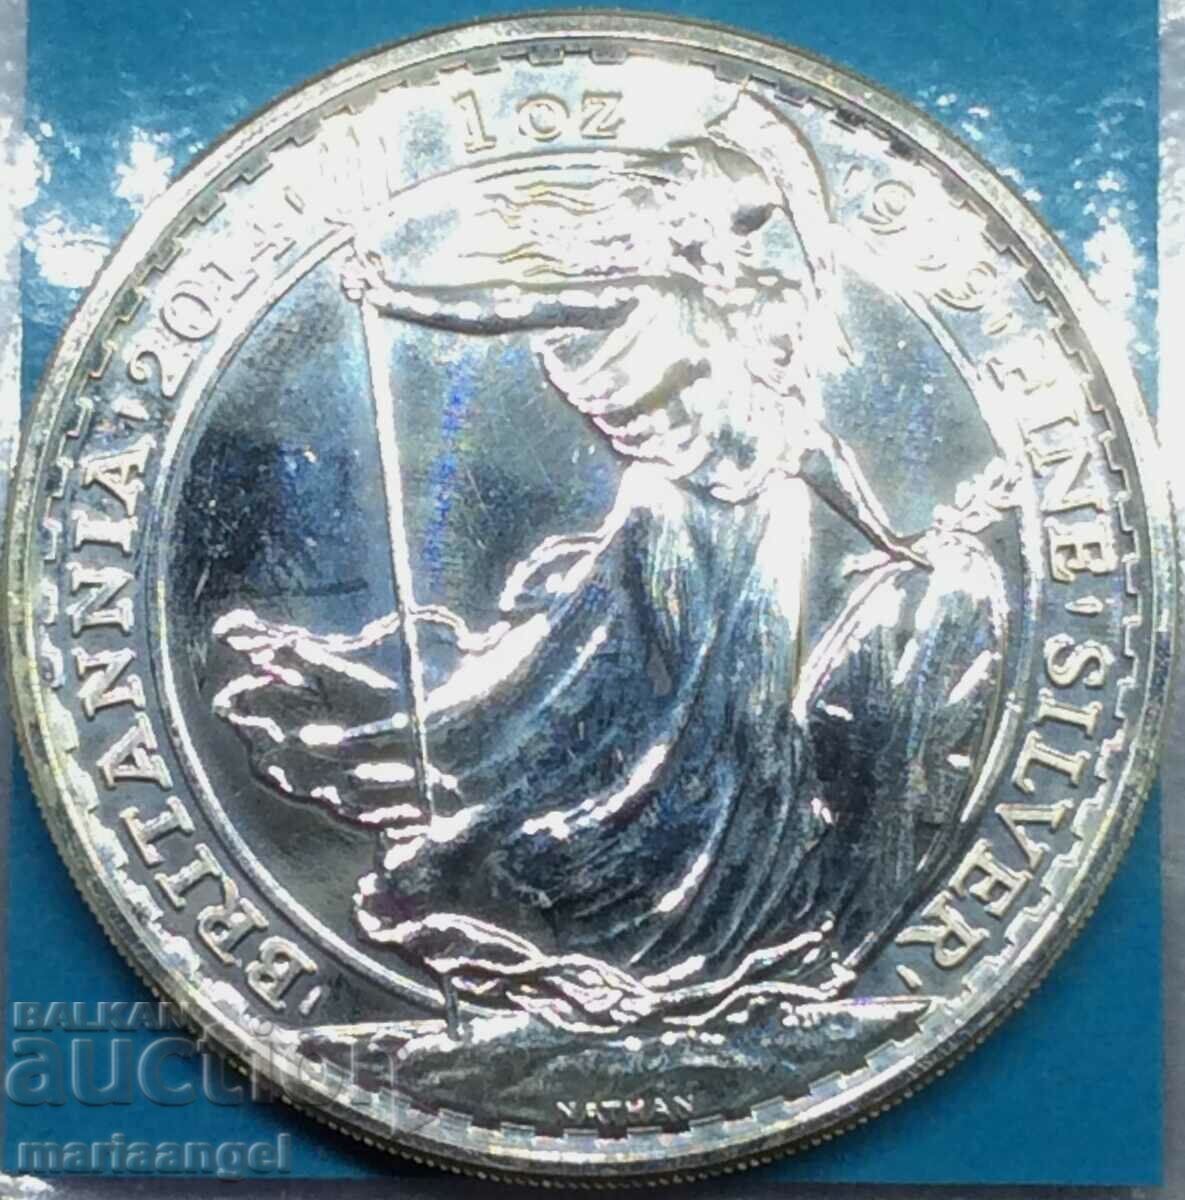 Μεγάλη Βρετανία 2 λίρες 2014 1 Oz "Britain" UNC Silver